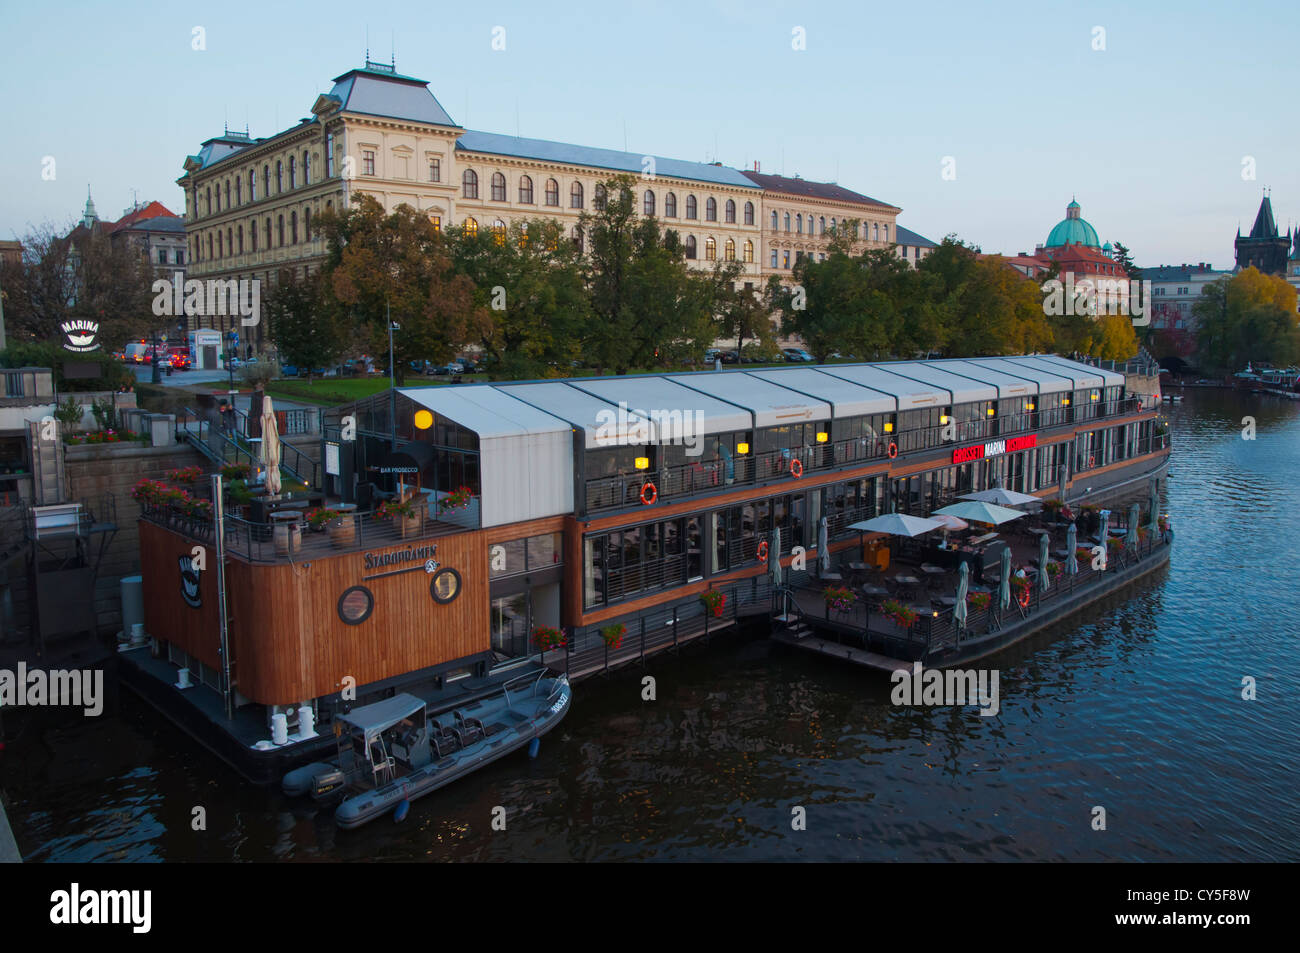 Barca flottante ristorante avviato nel 2012 nella parte anteriore della vecchia città sul fiume Vltava centrale di Praga Repubblica Ceca Europa Foto Stock